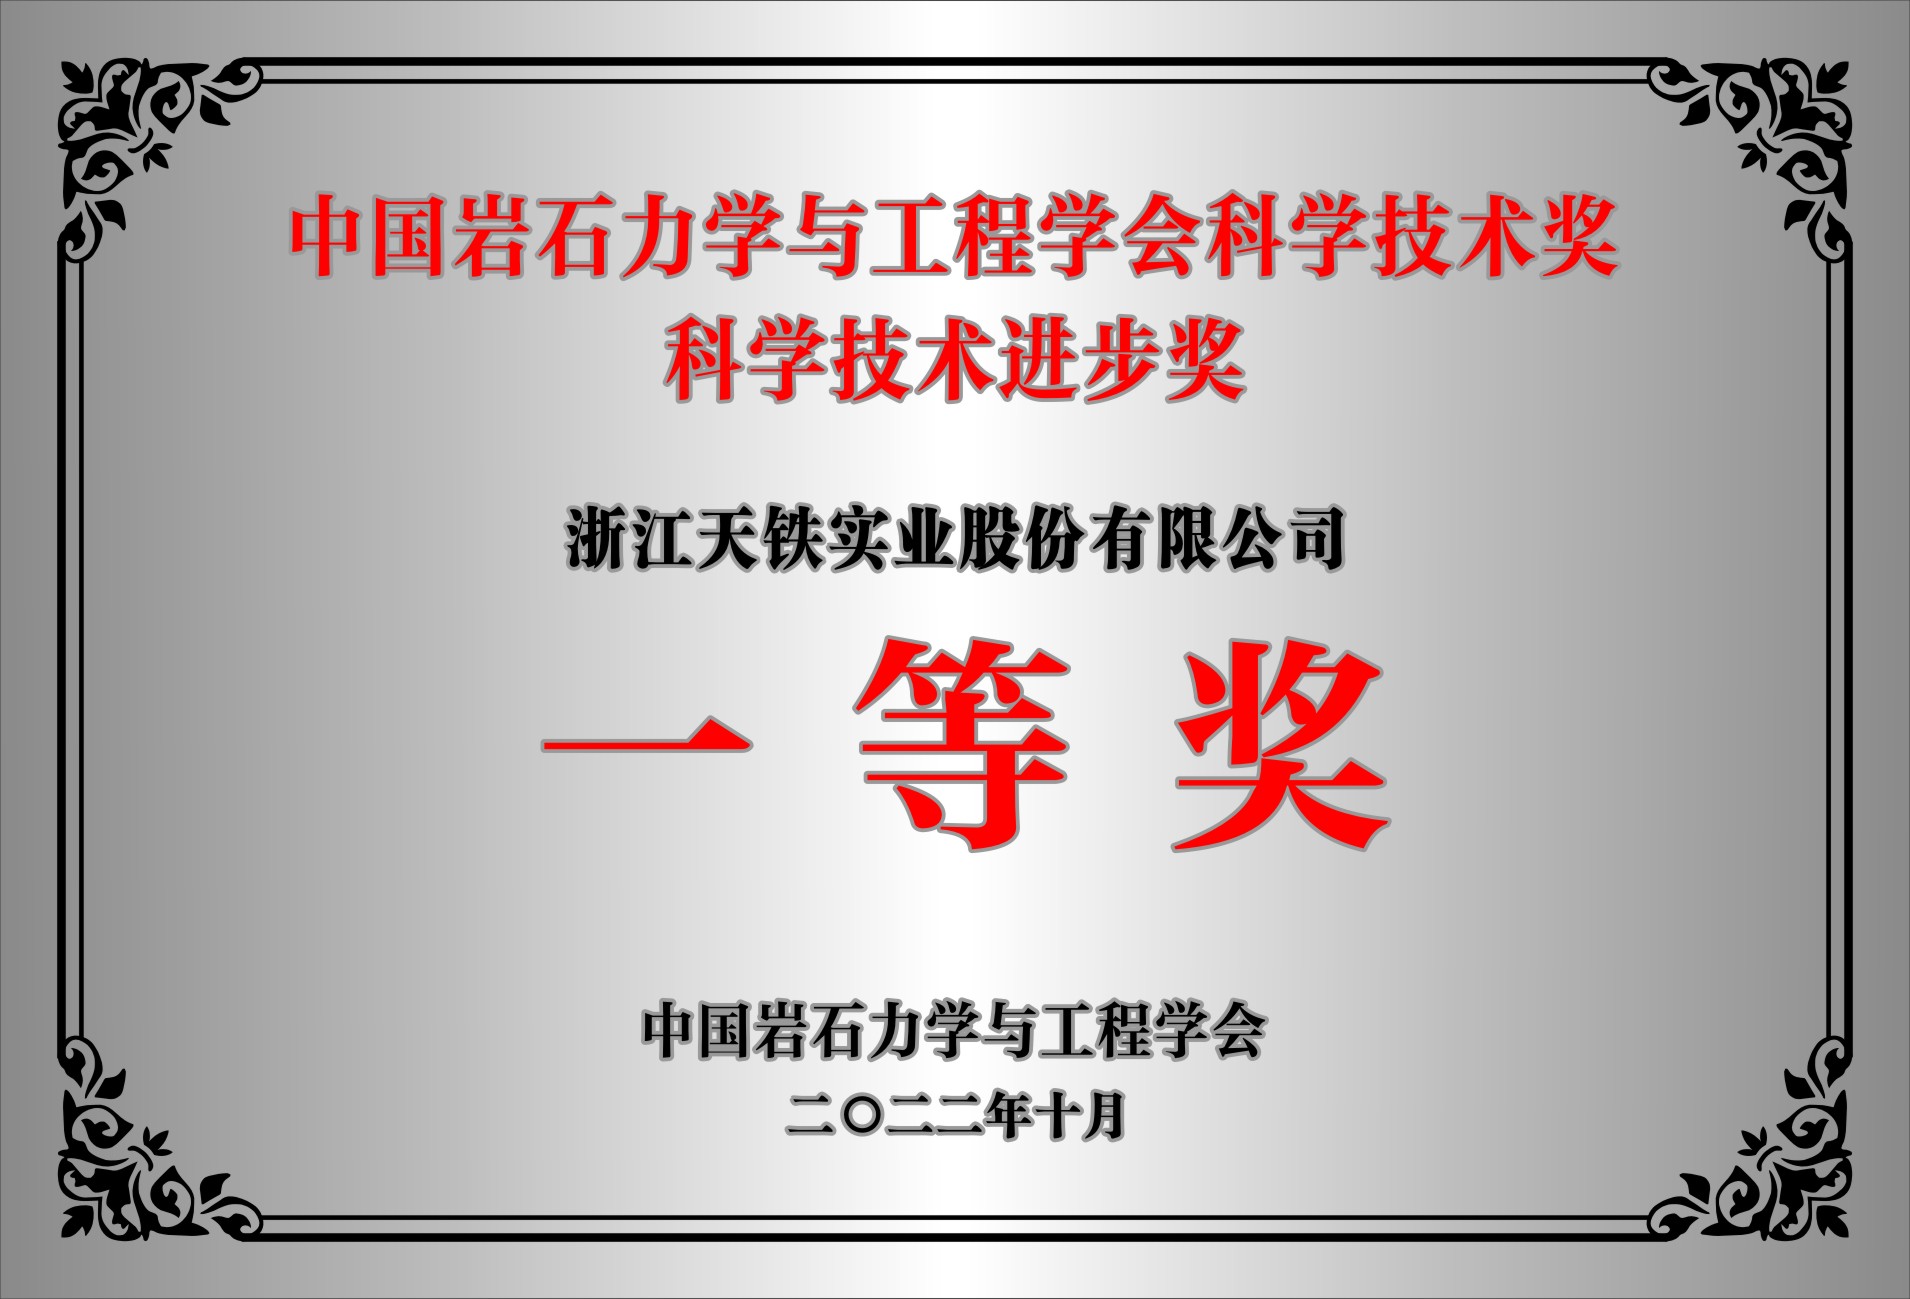 中國巖石力學與工程學會科學技術獎 科學技術進步獎 一等獎